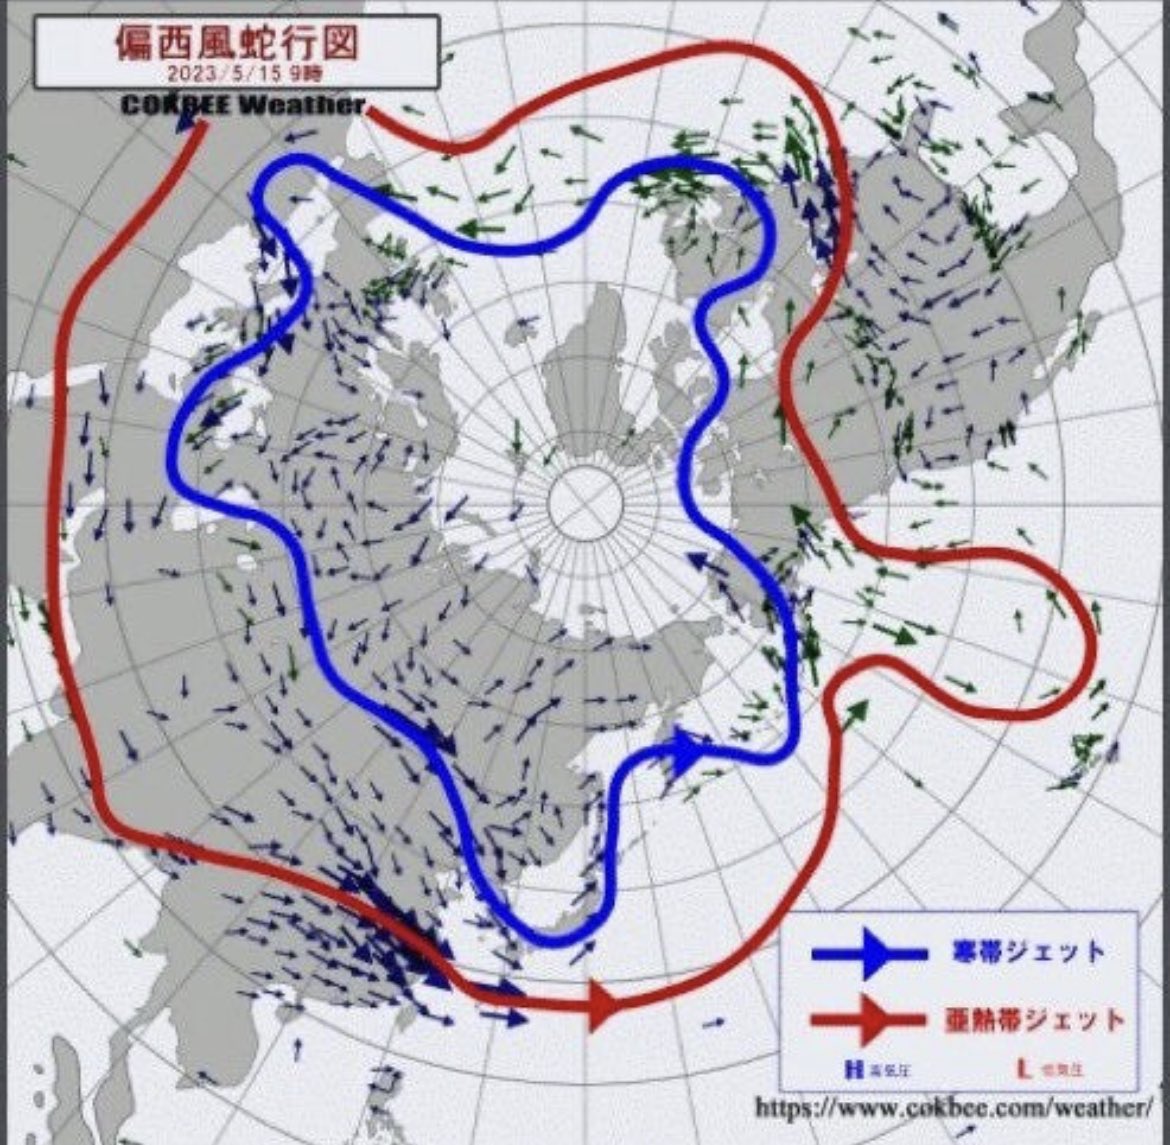 「あくまで注意喚起」
先日ウクライナにおいて
ロシアによる武器保管庫爆破し
その際にイギリスから支給された
劣化ウラン弾が保管されており
同時に起爆し大規模な核爆発が起きた。

どうやら偏西風などに煽られ
今現在その劣化ウランの風が
日本に吹き荒れているとの事。
ameblo.jp/imasters2011/e…